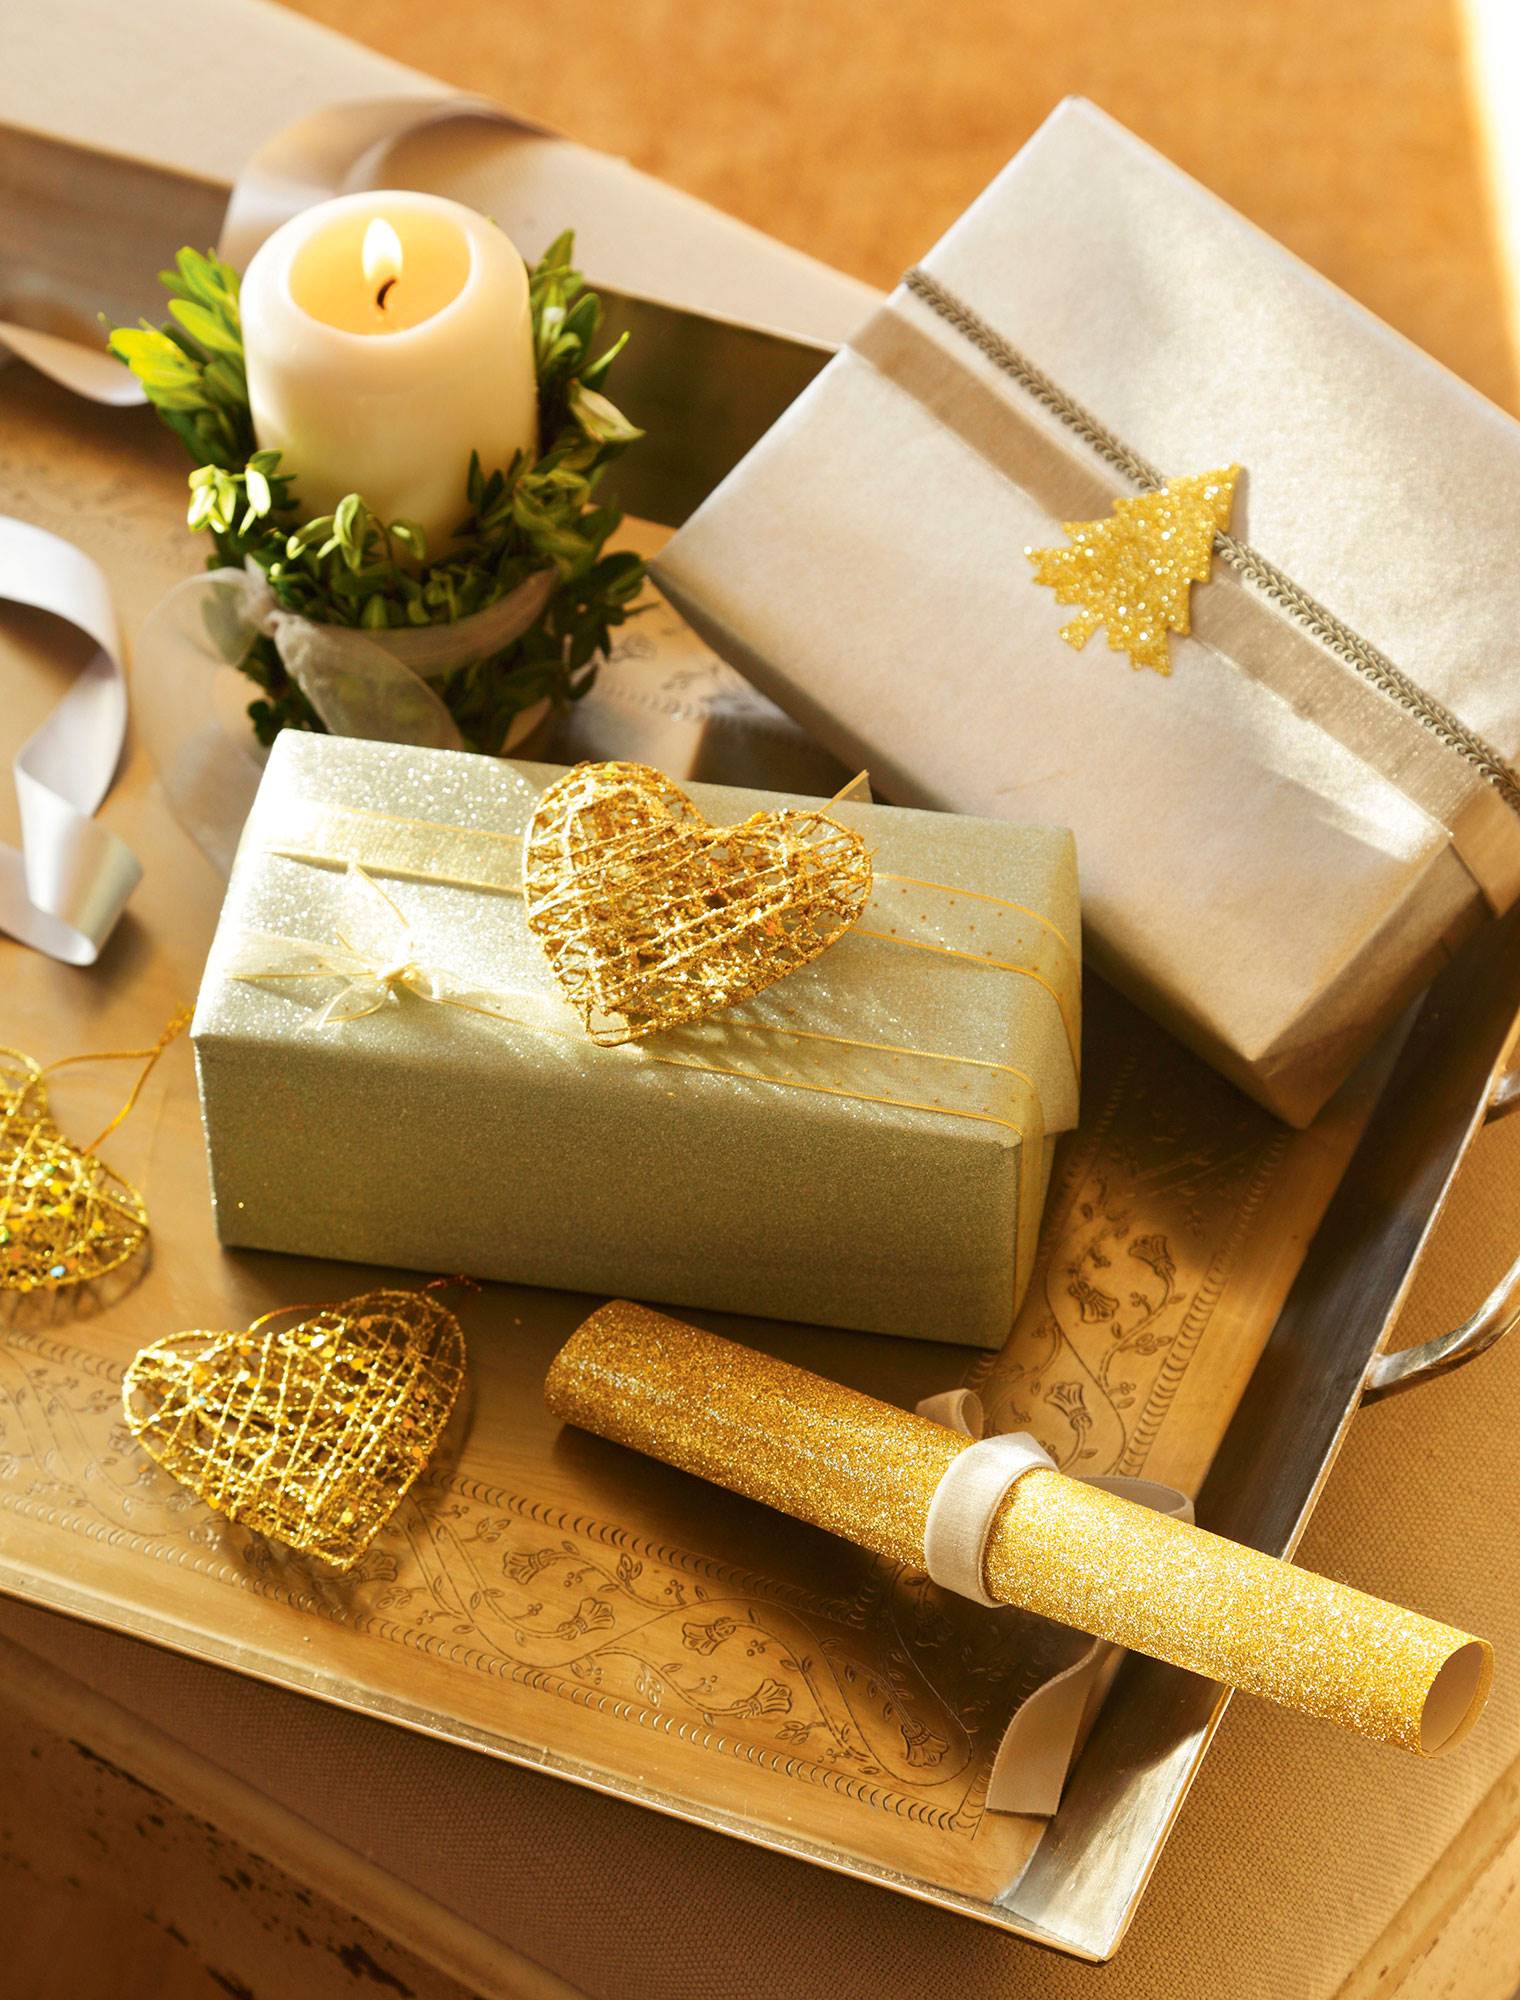 Detalles de regalos con adornos de corazones y abetos dorados